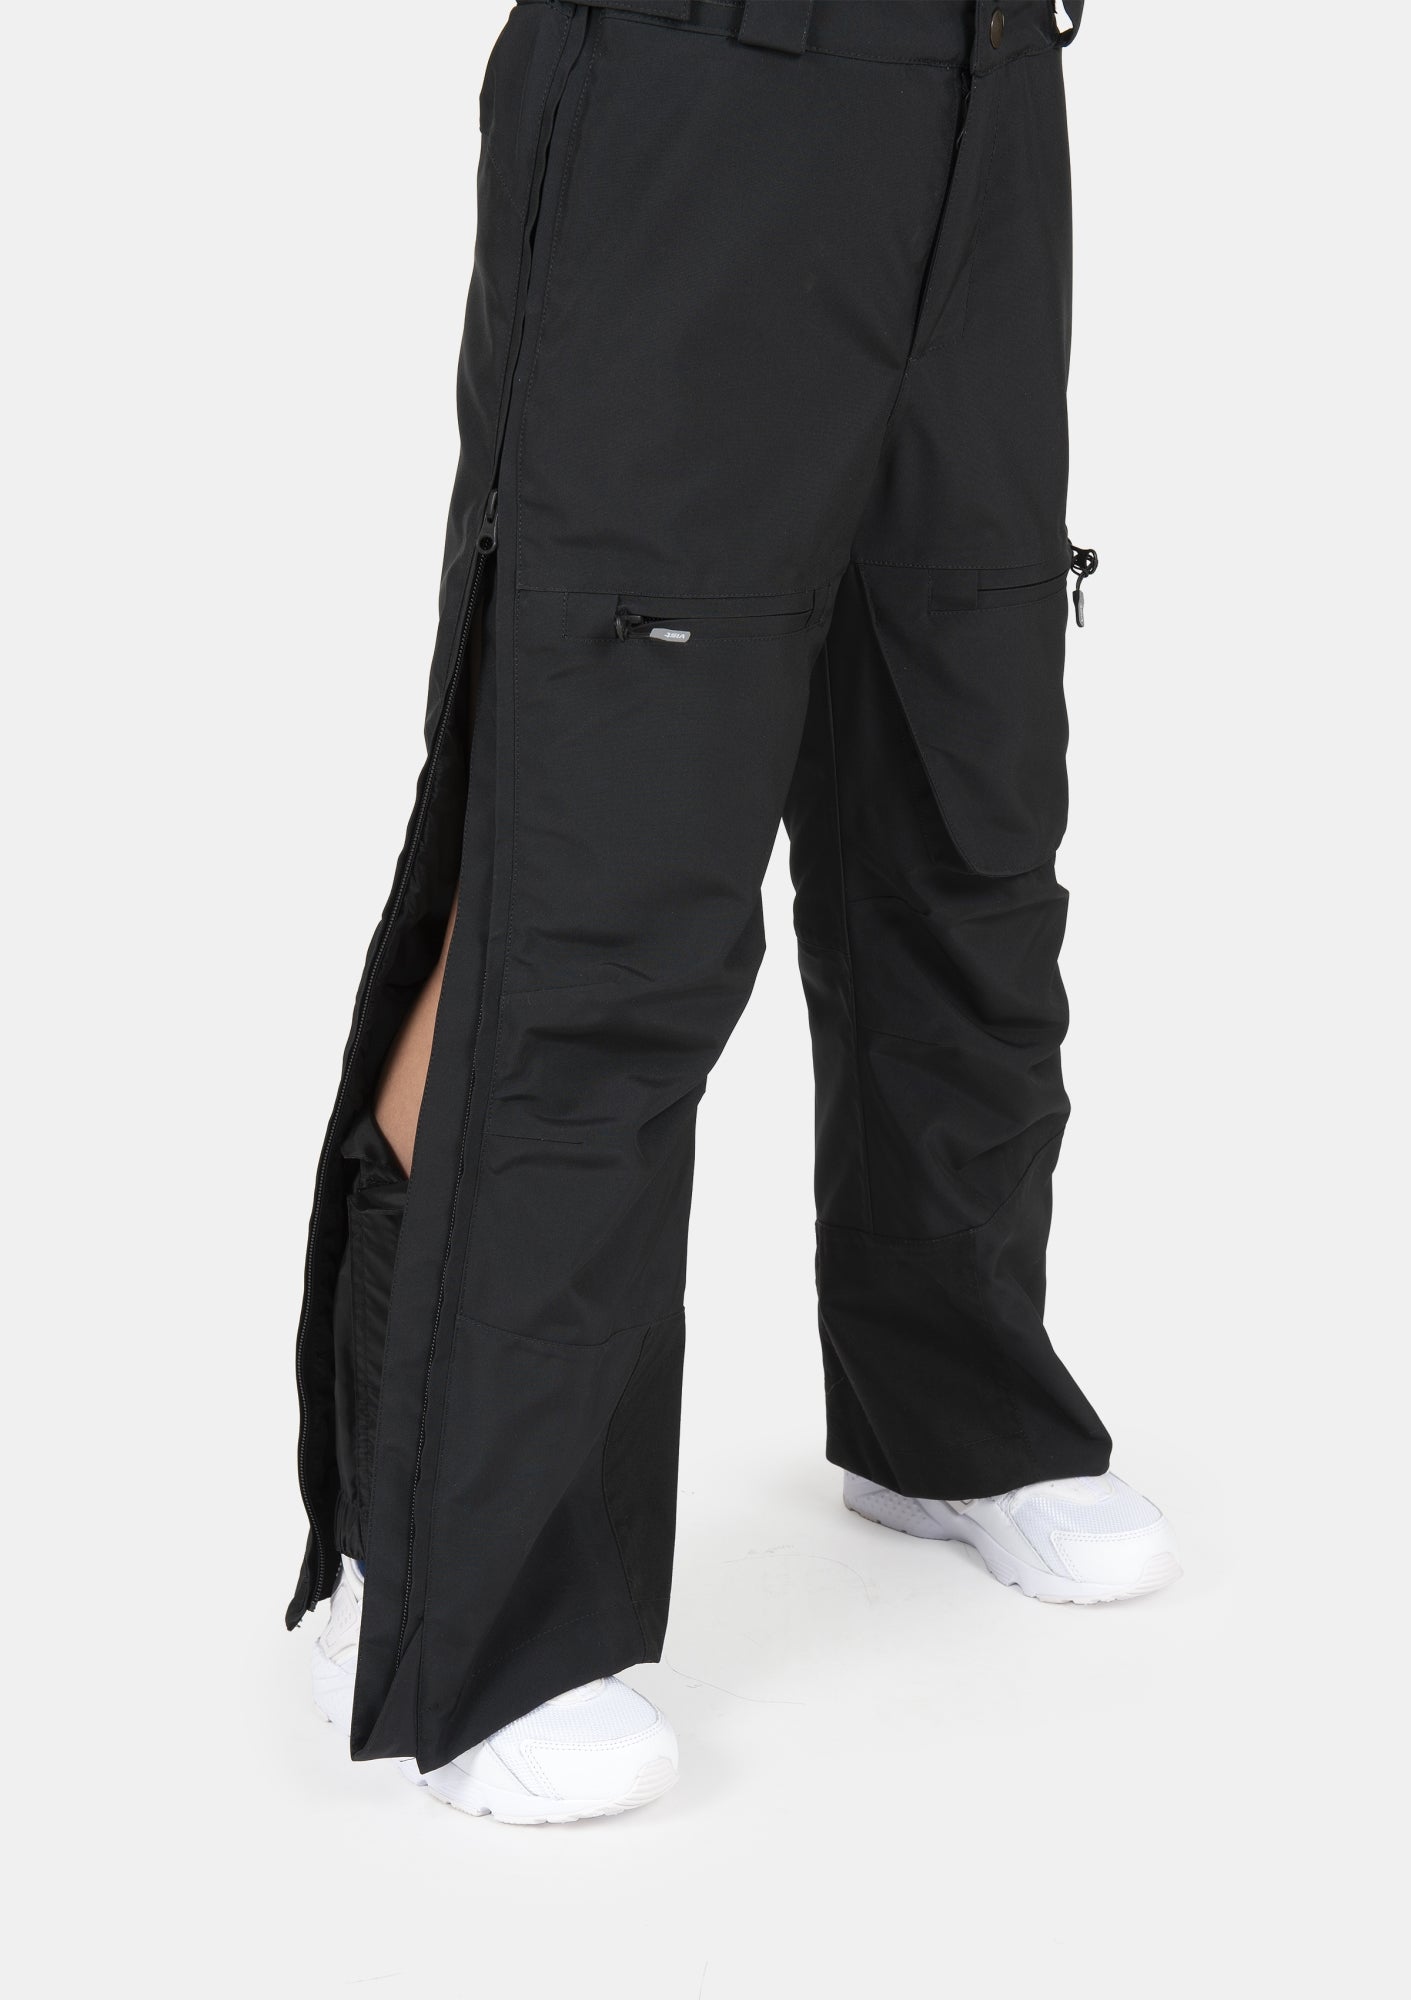 Pantaloni Delta Pro Full Zip 